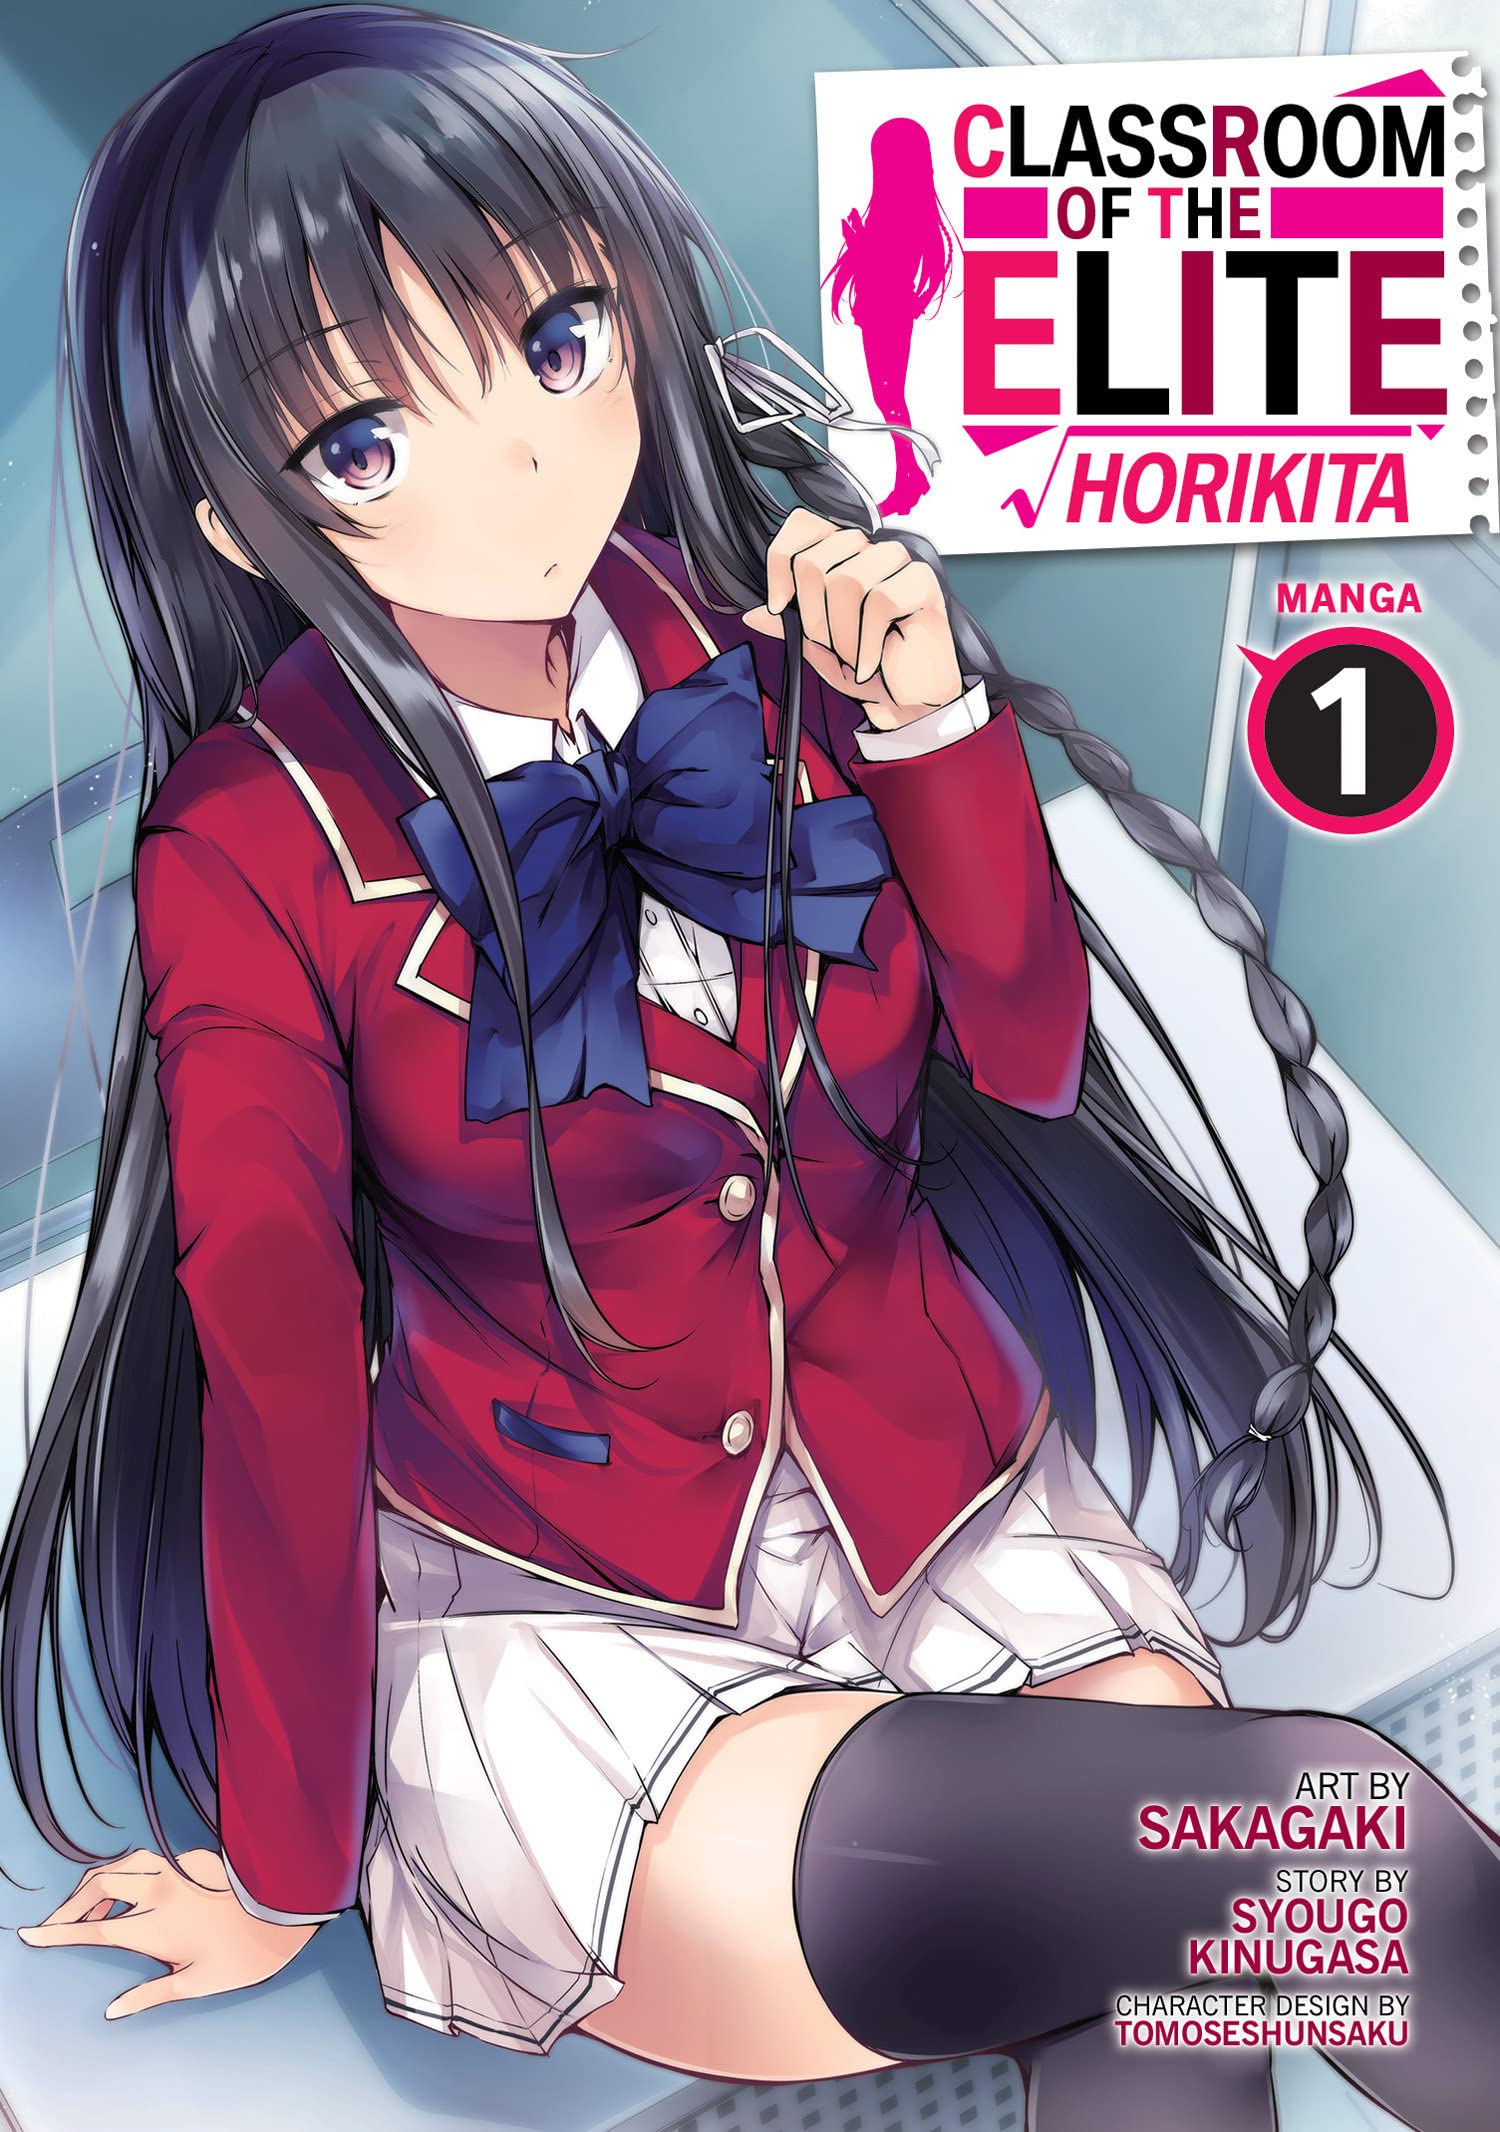 Classroom of the Elite: Horikita (Manga) Vol. 01